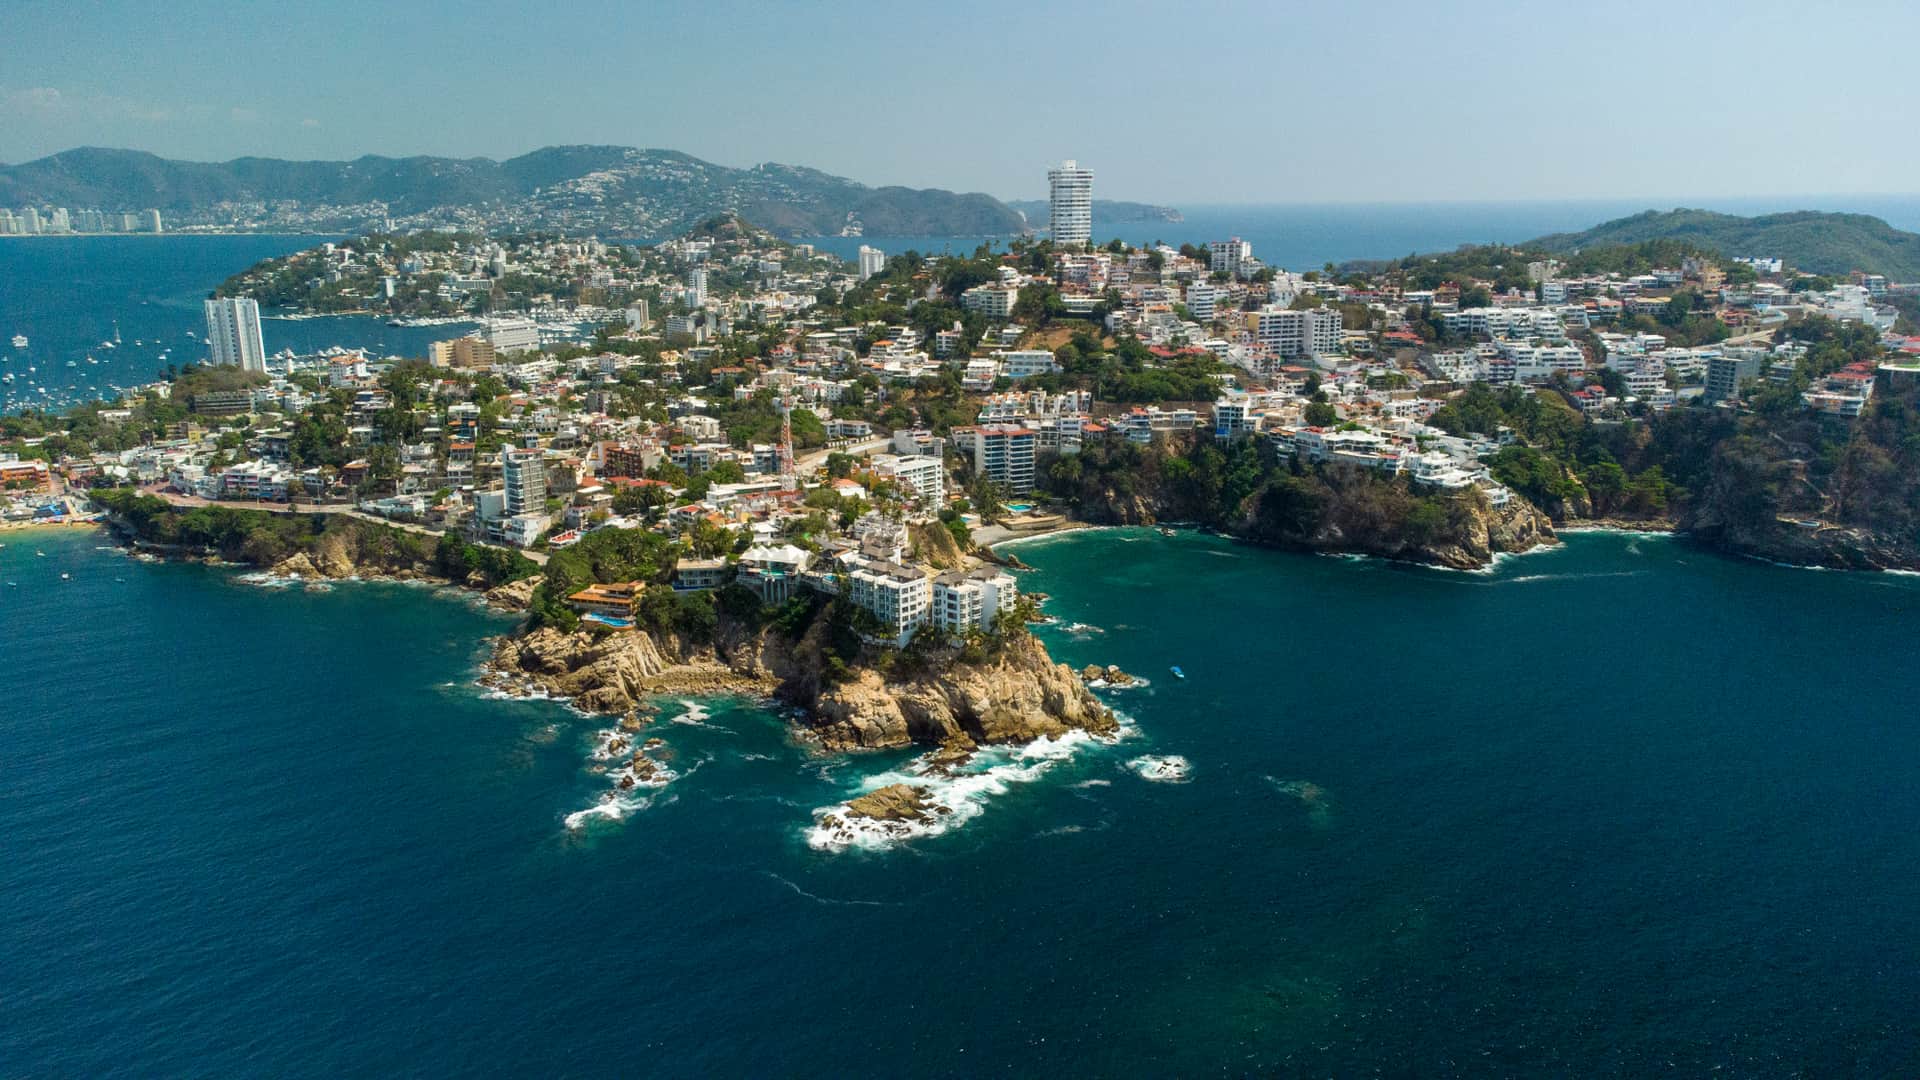 vista aerea de la ciudad de acapulco y sus playas para hacer referencia a las sucursales de dish en esa localidad